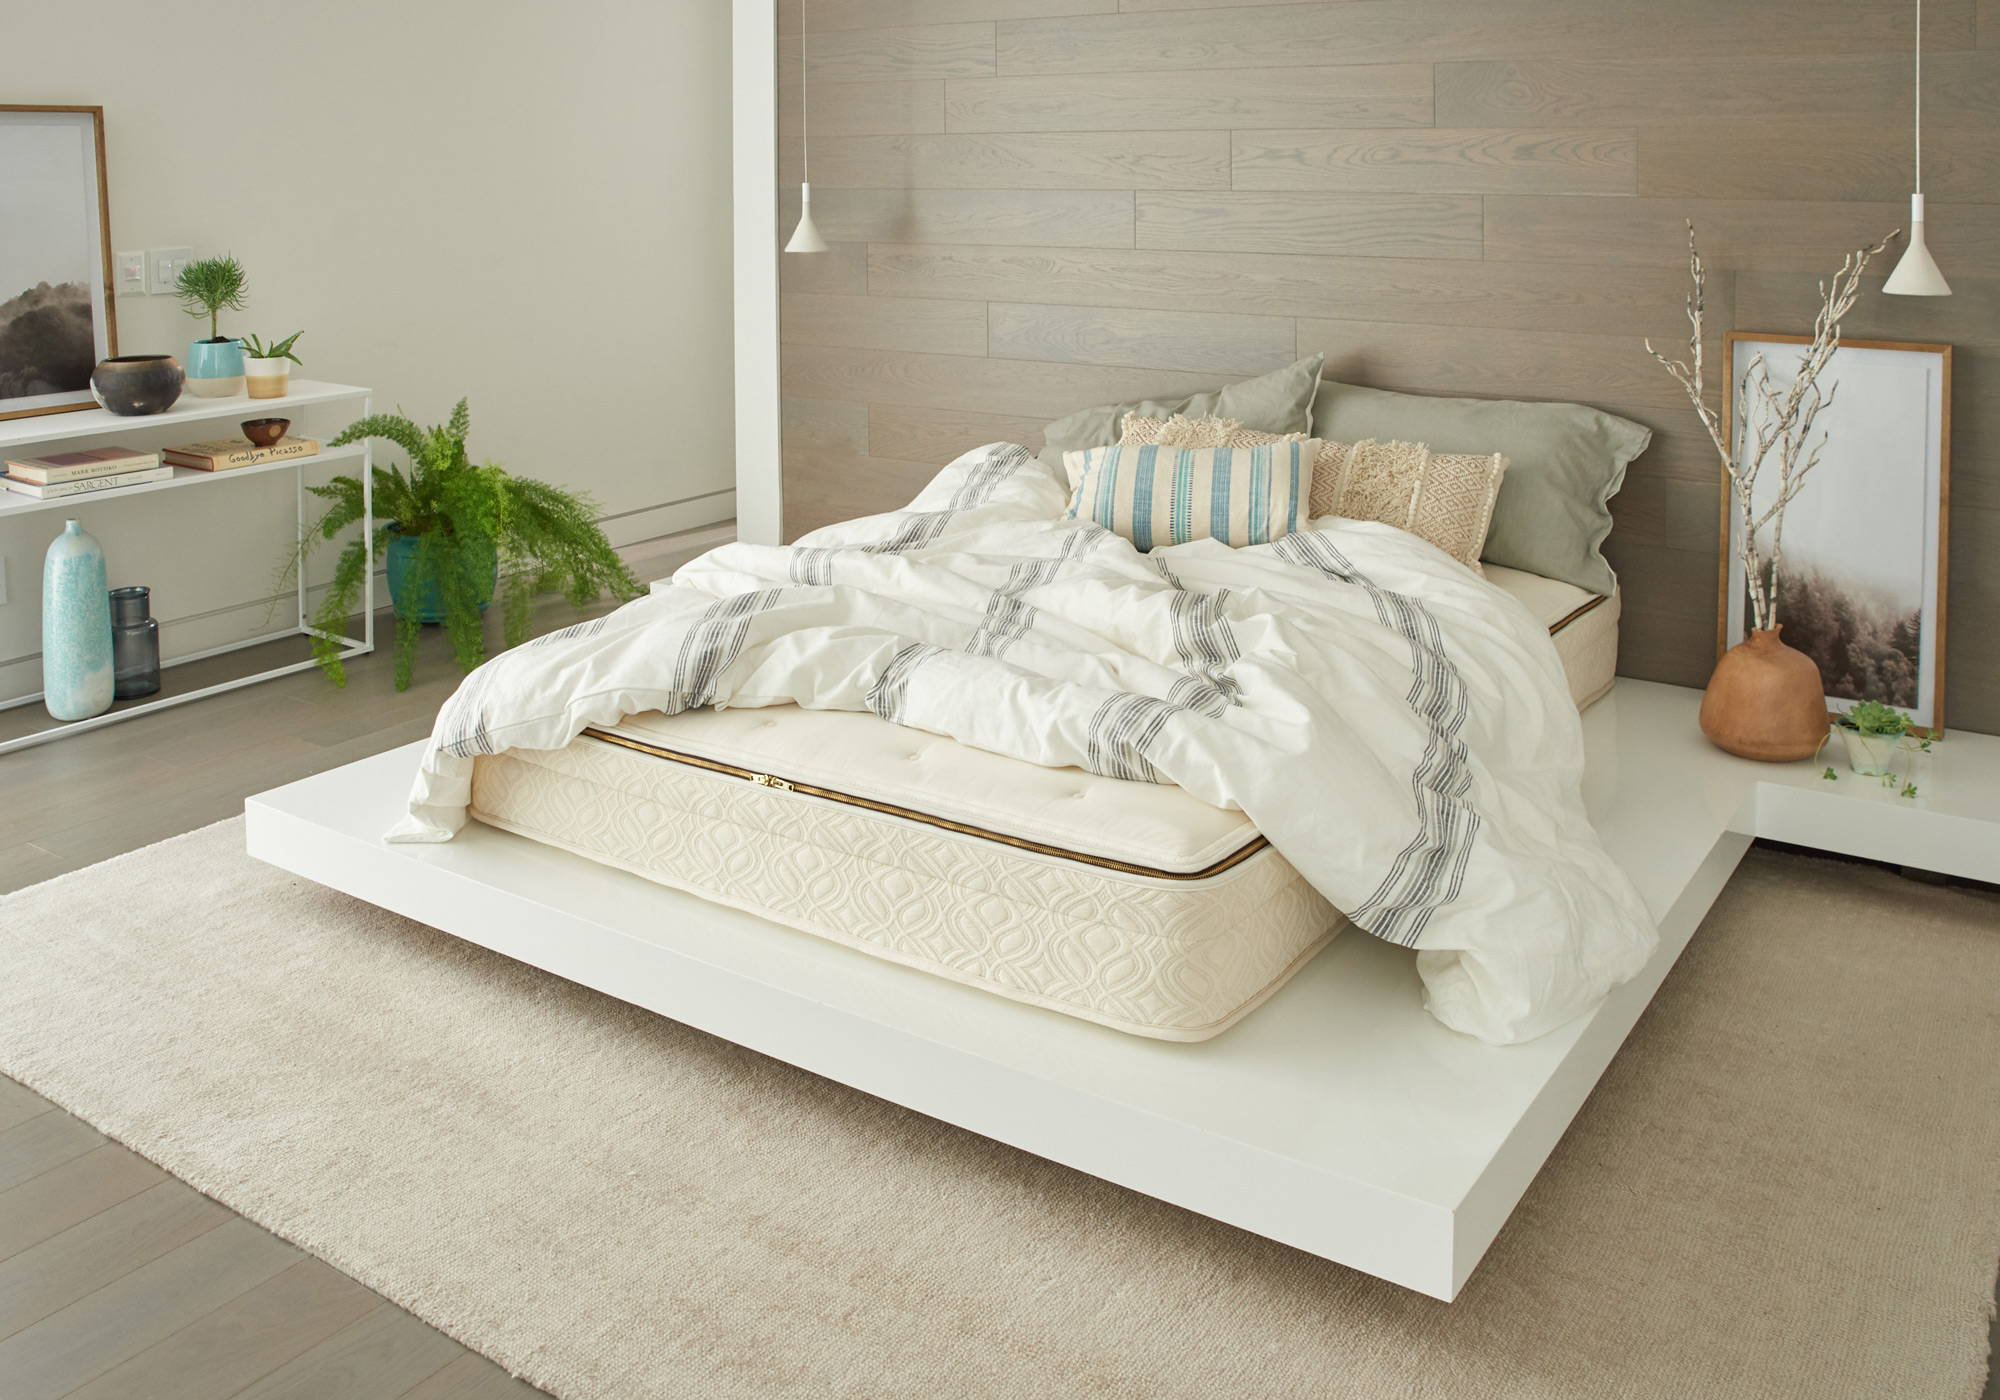 v sleep mattress azure